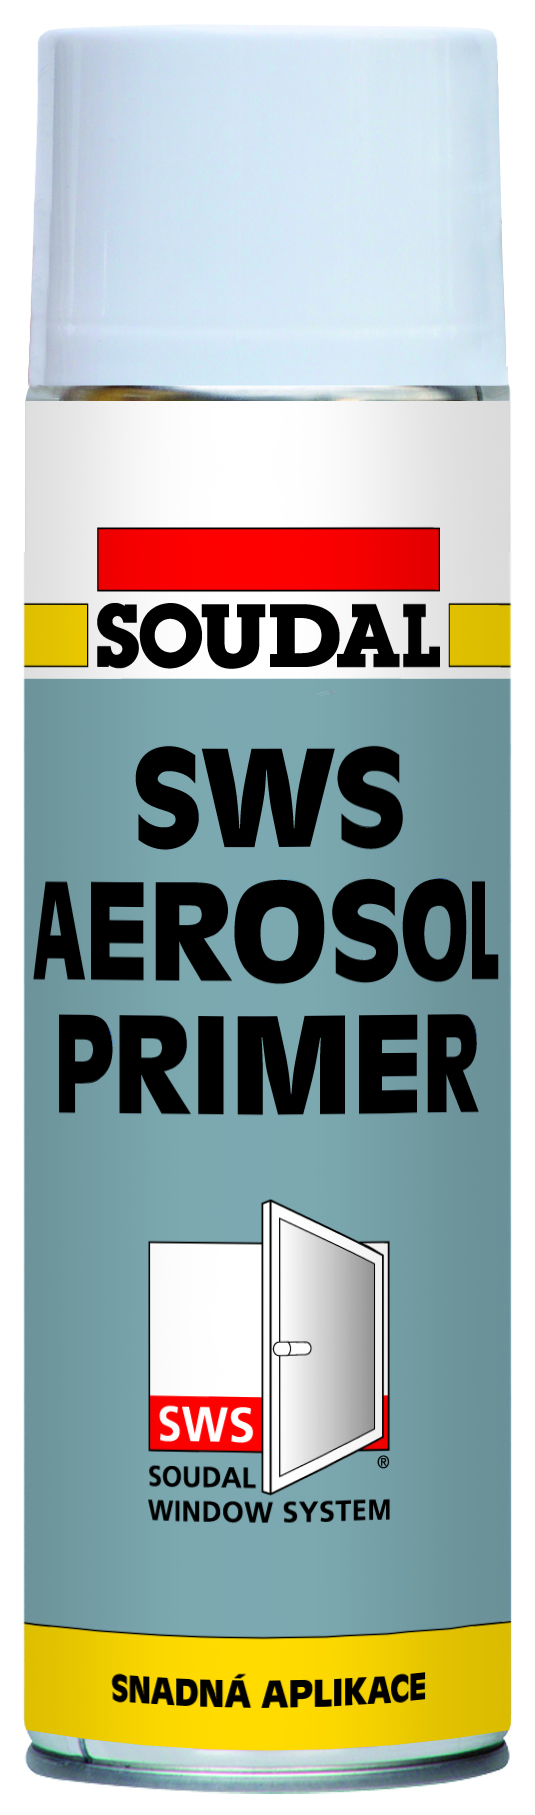 E-shop Soudal SWS Primer Aerosol 500ml